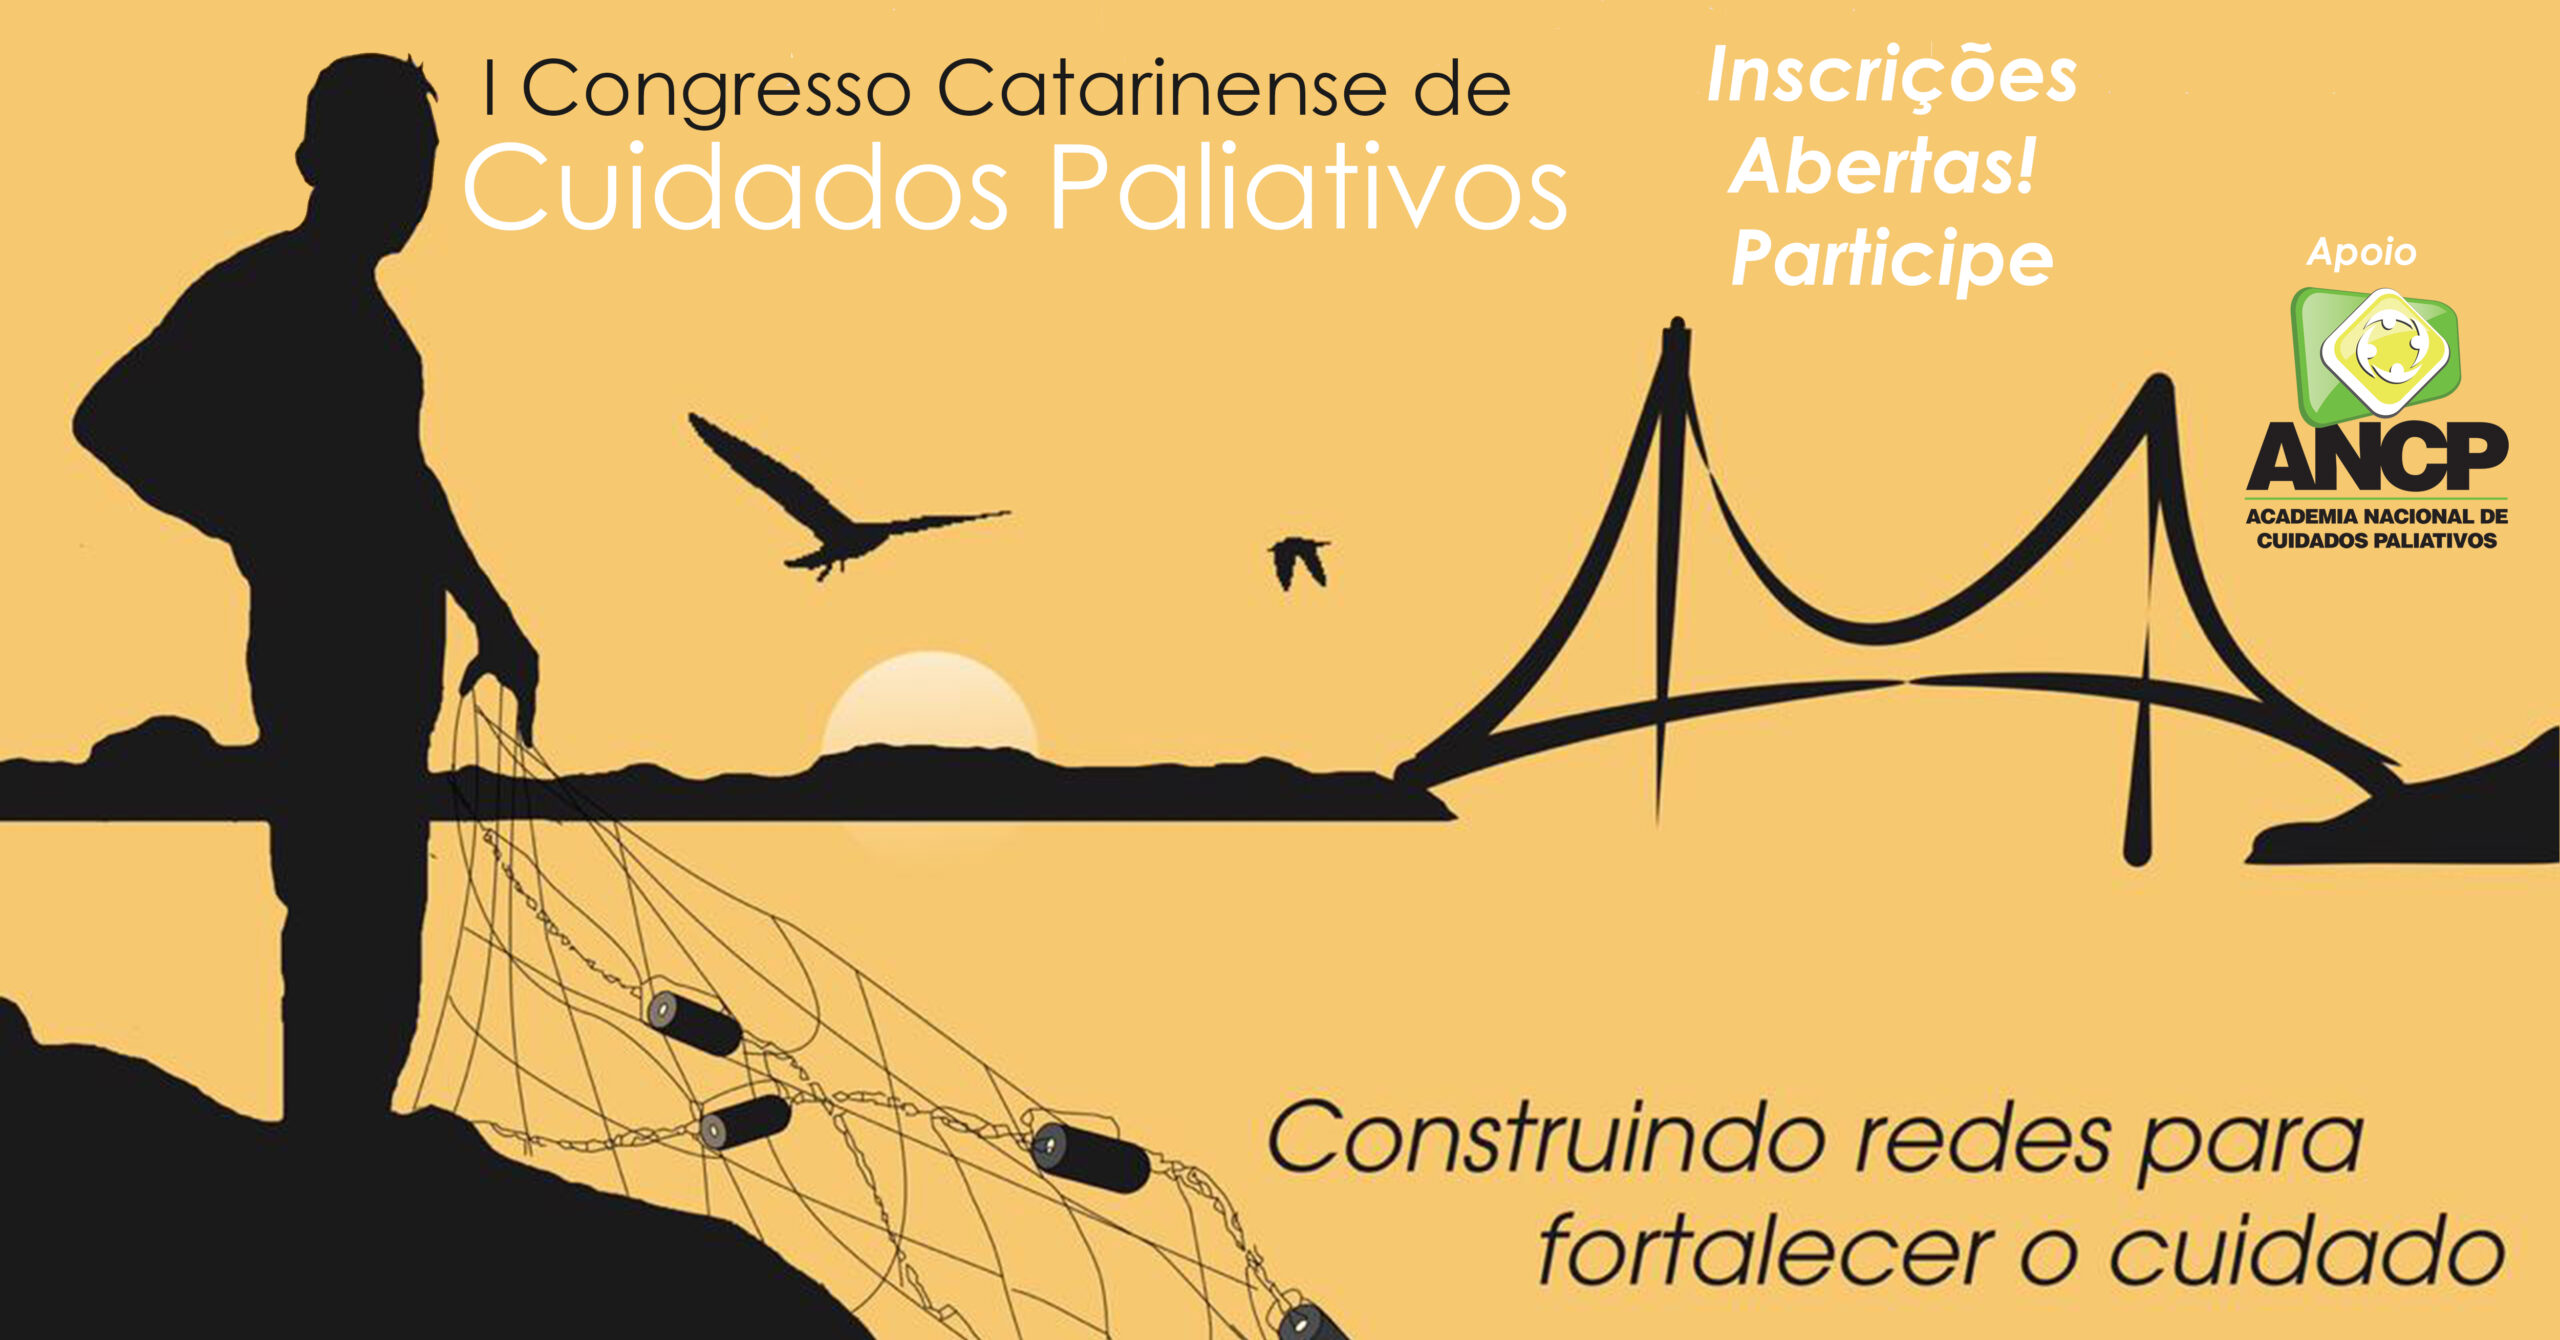 I Congresso Catarinense de Cuidados Paliativos